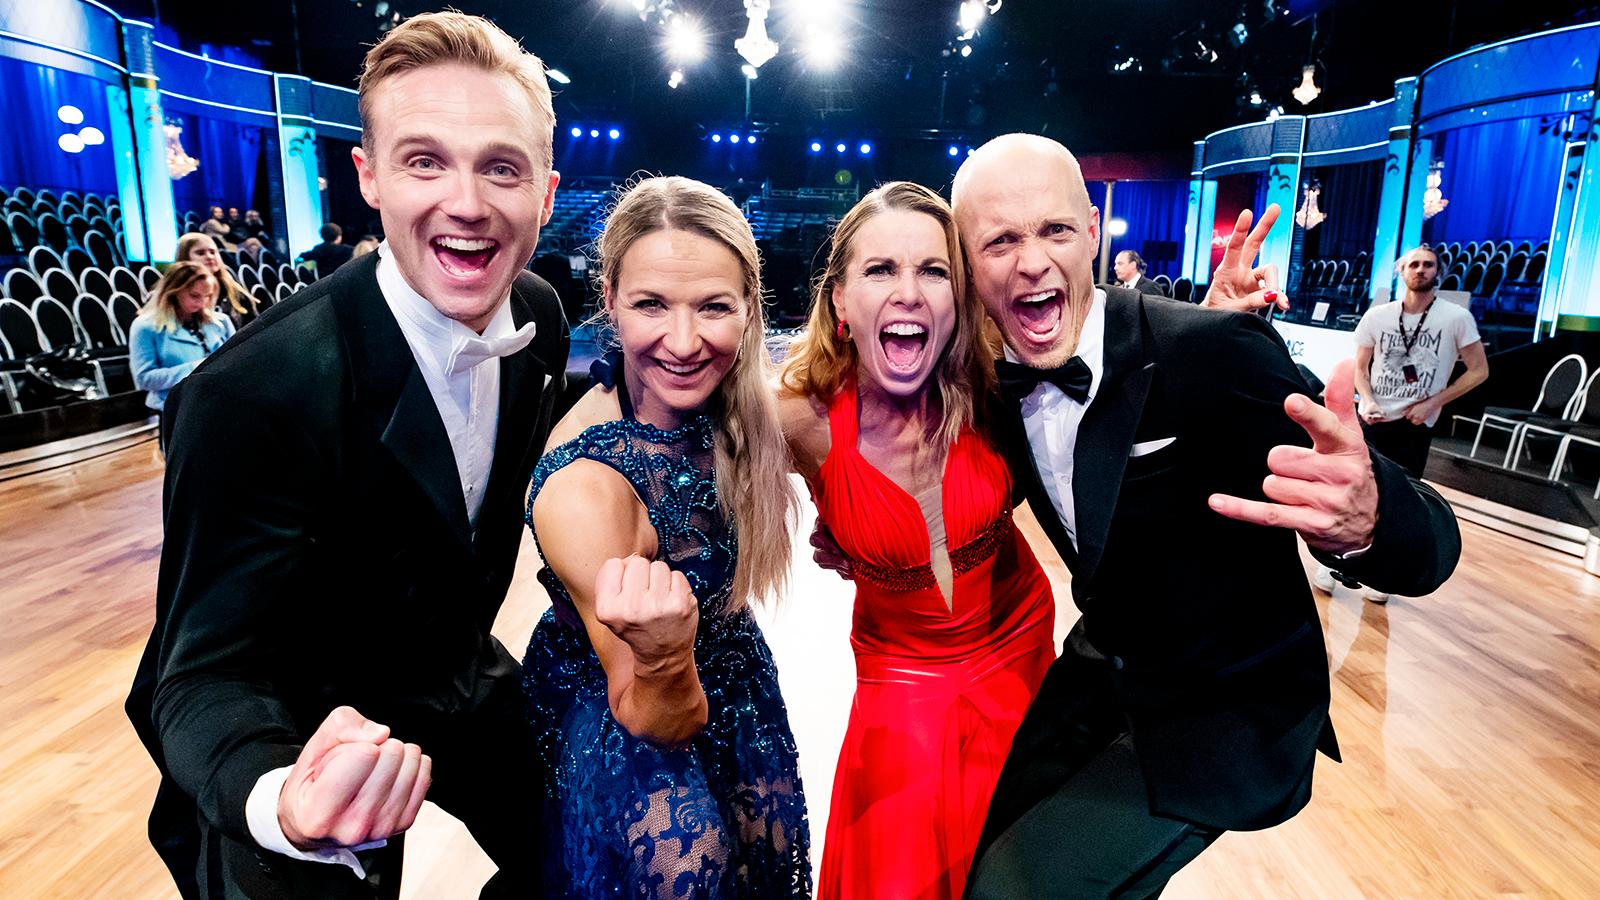 Calle Sterner och Kristin Kaspersen möter Magdalena Forsberg och Tobias Karlsson i finalen av ”Let’s dance”.